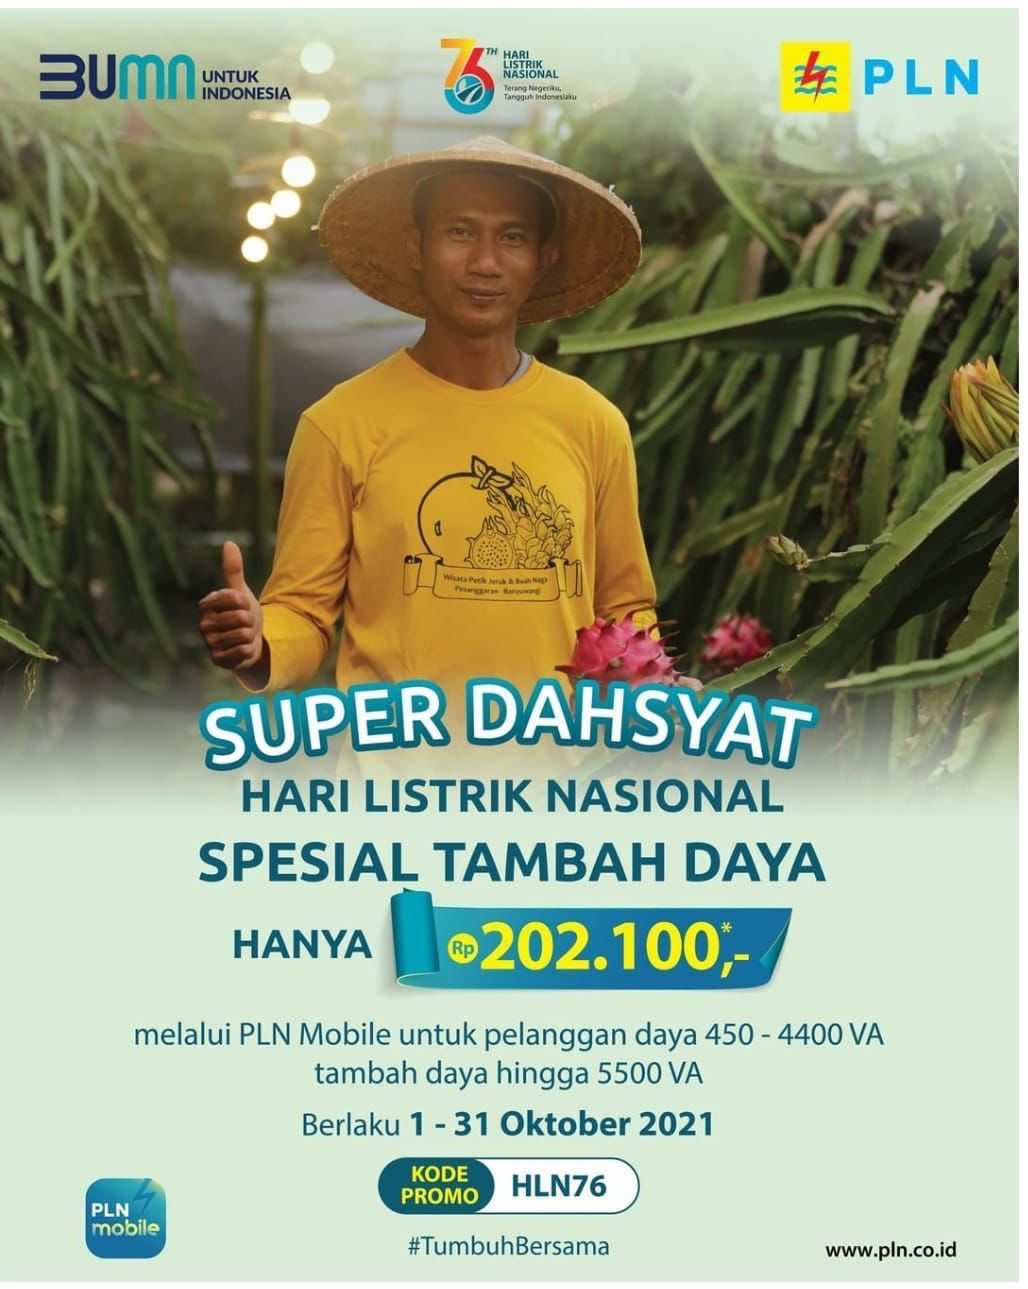 Hari Listrik Nasional ke-76, PLN Promo Super Dahsyat Tambah Daya Hanya Rp202.100